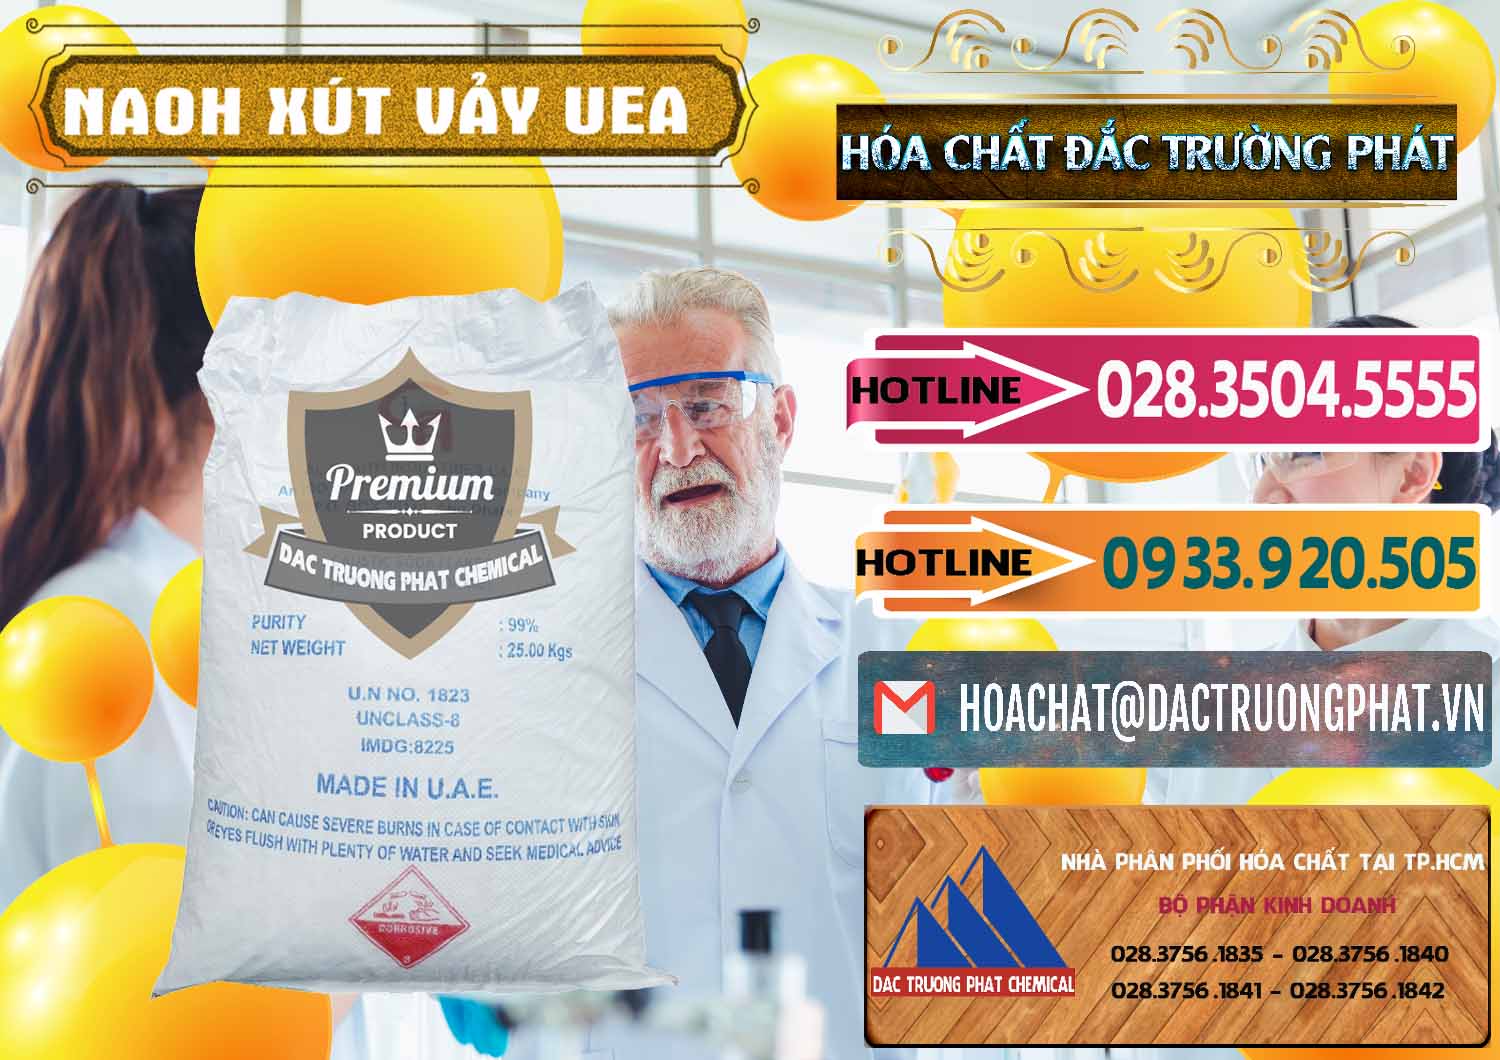 Đơn vị chuyên kinh doanh & bán Xút Vảy - NaOH Vảy UAE Iran - 0432 - Cty chuyên phân phối ( kinh doanh ) hóa chất tại TP.HCM - dactruongphat.vn